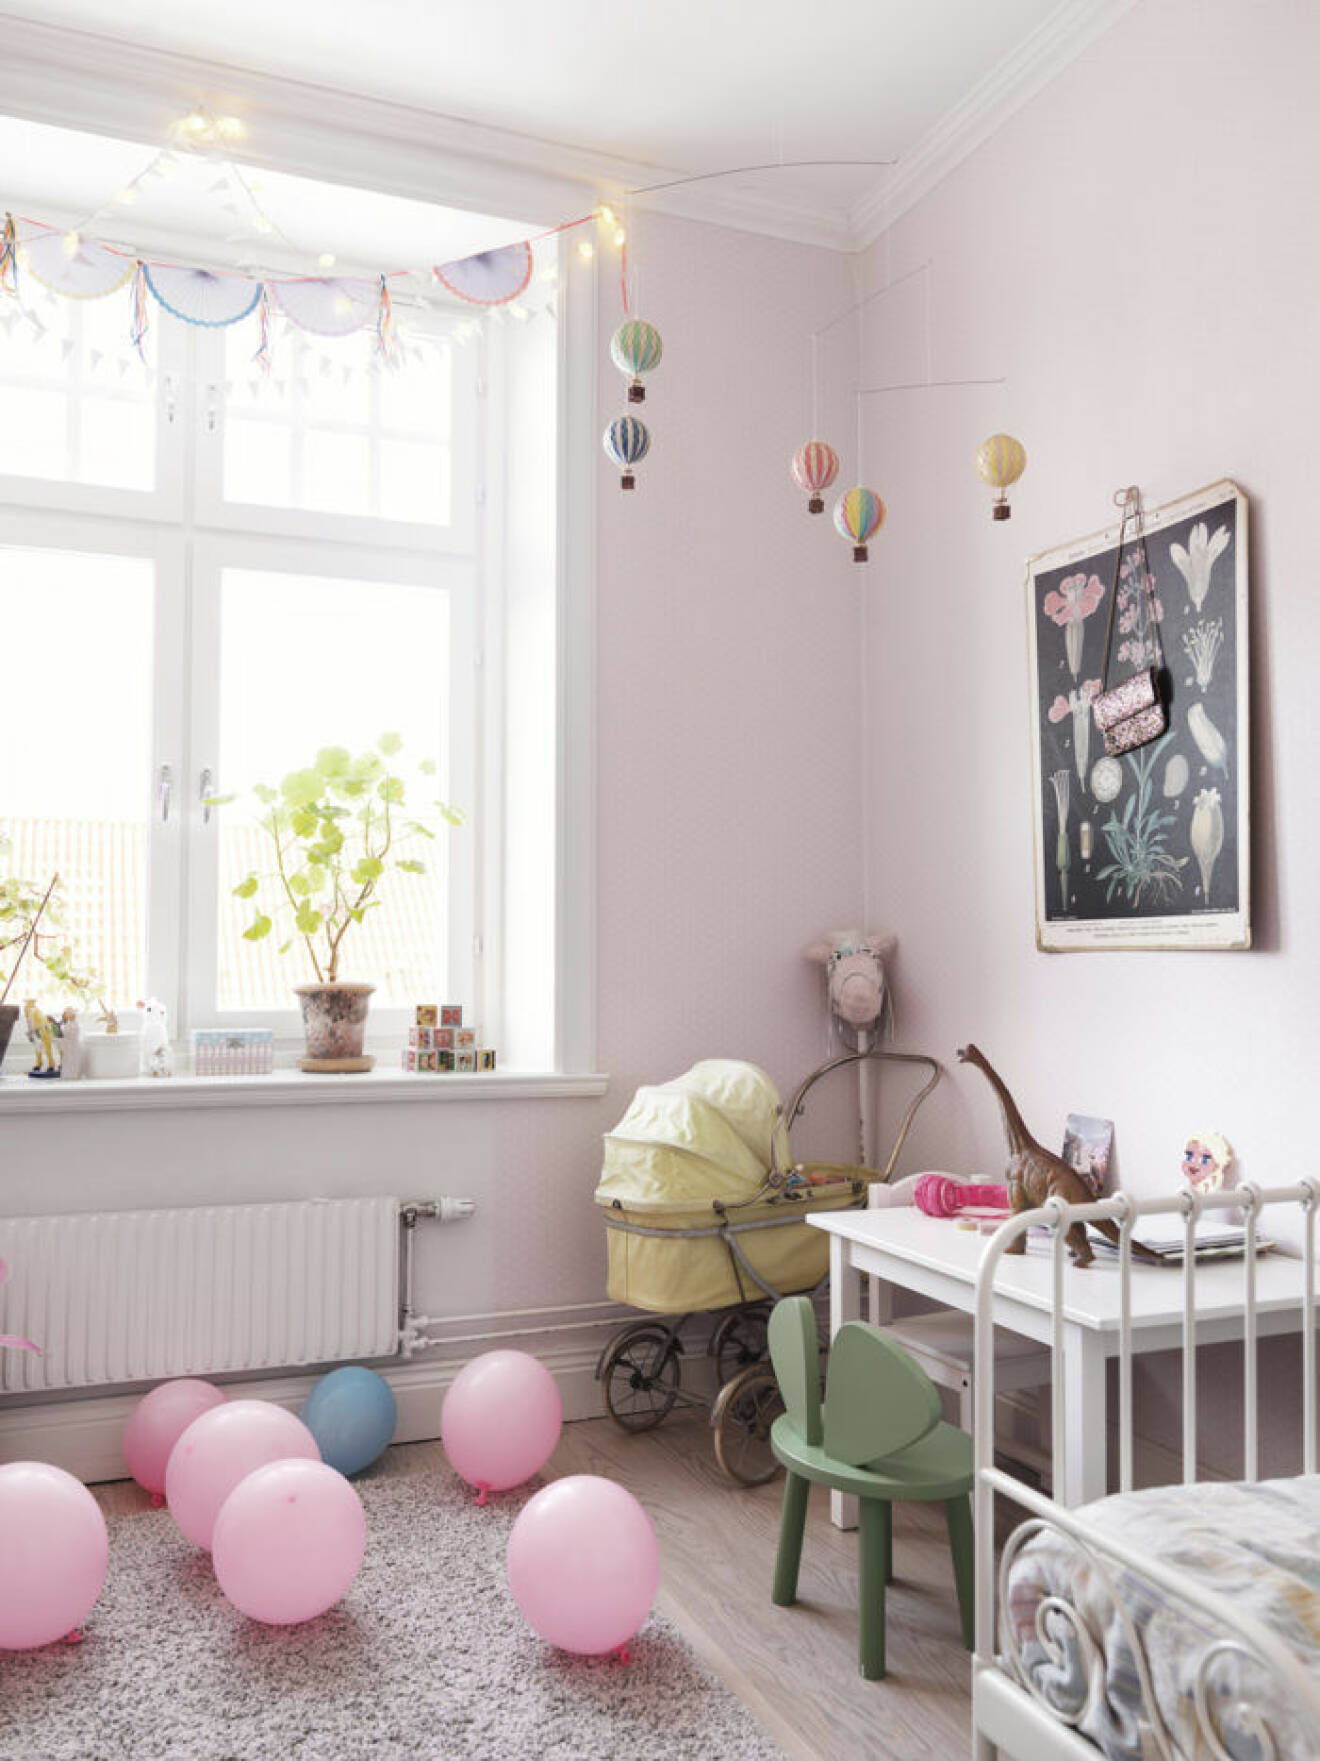 rosa barnrum med små luftballonger